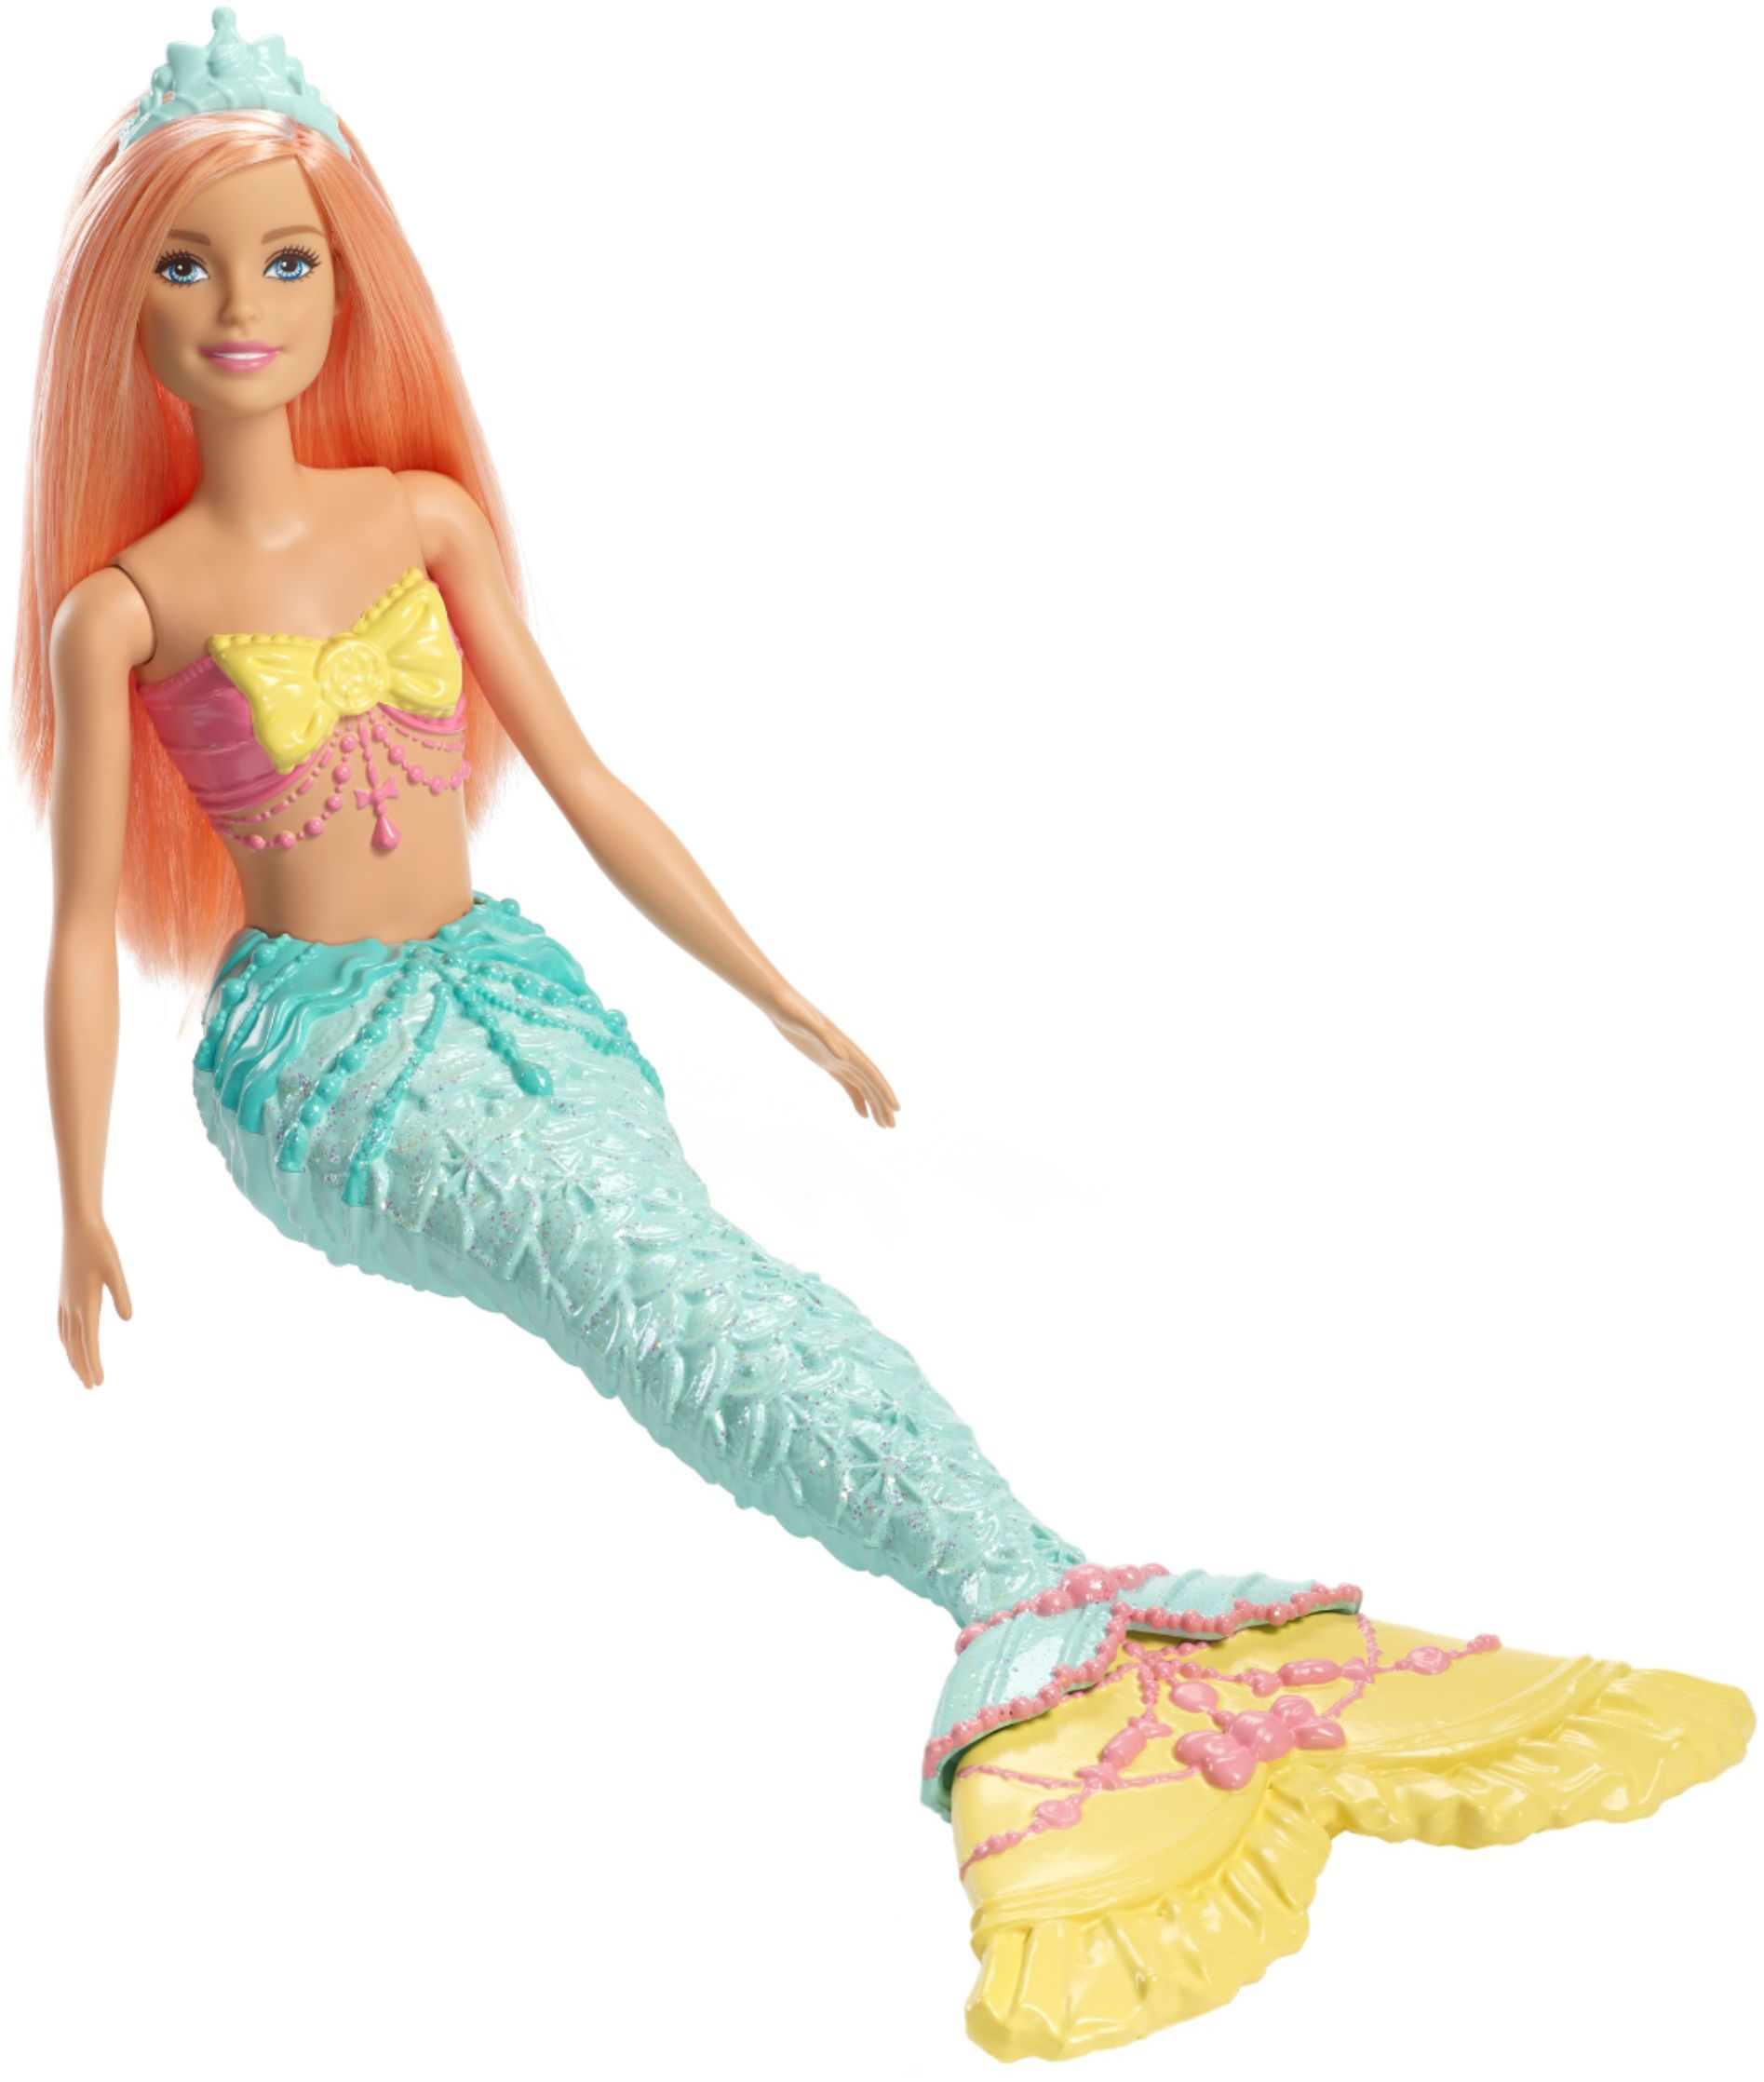 mermaid barbie dolls